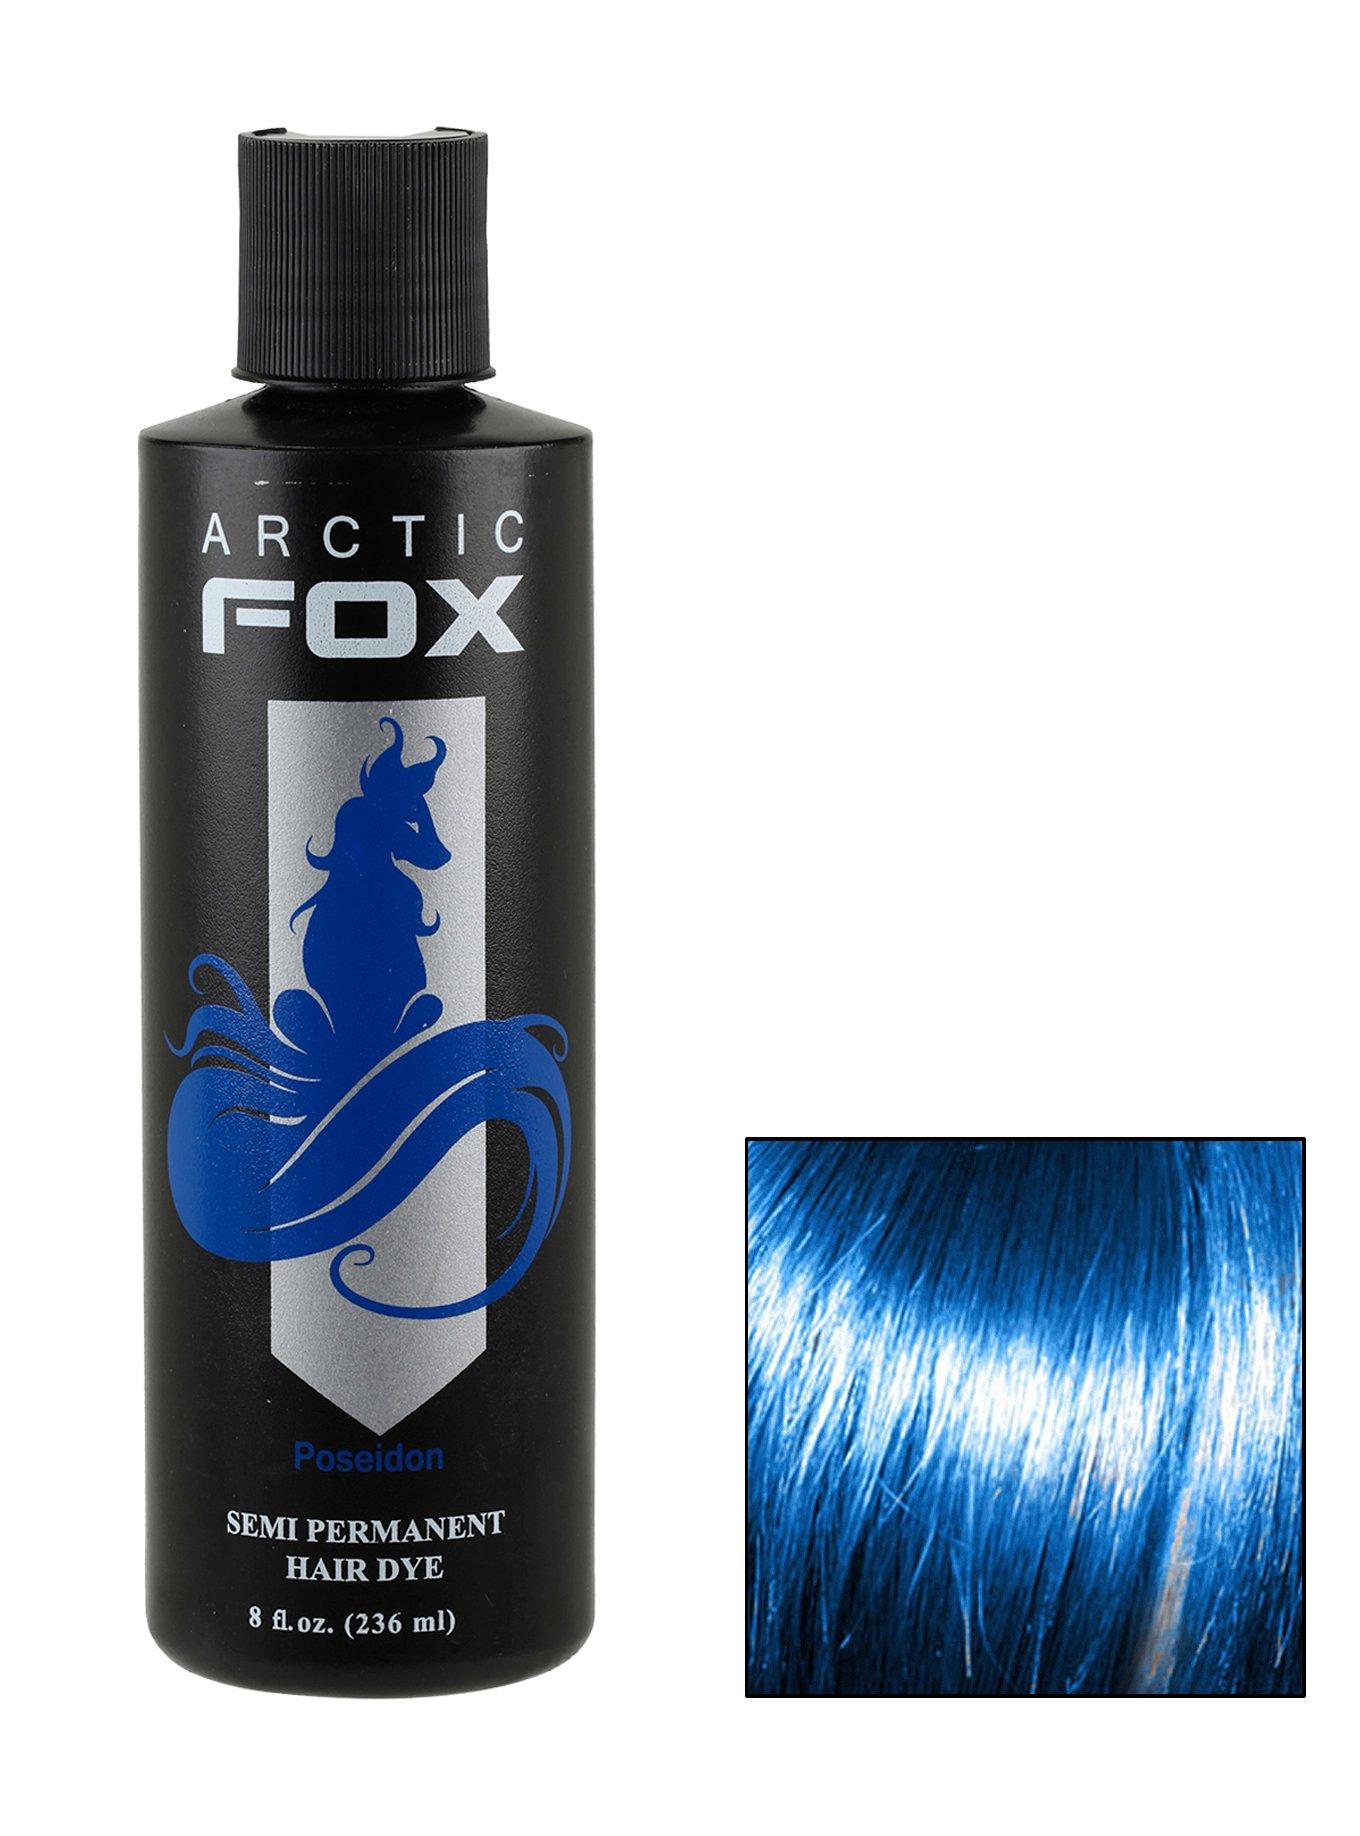 Arctic Fox Semi-Permanent 8Oz Poseidon Hair Dye | Hot Topic